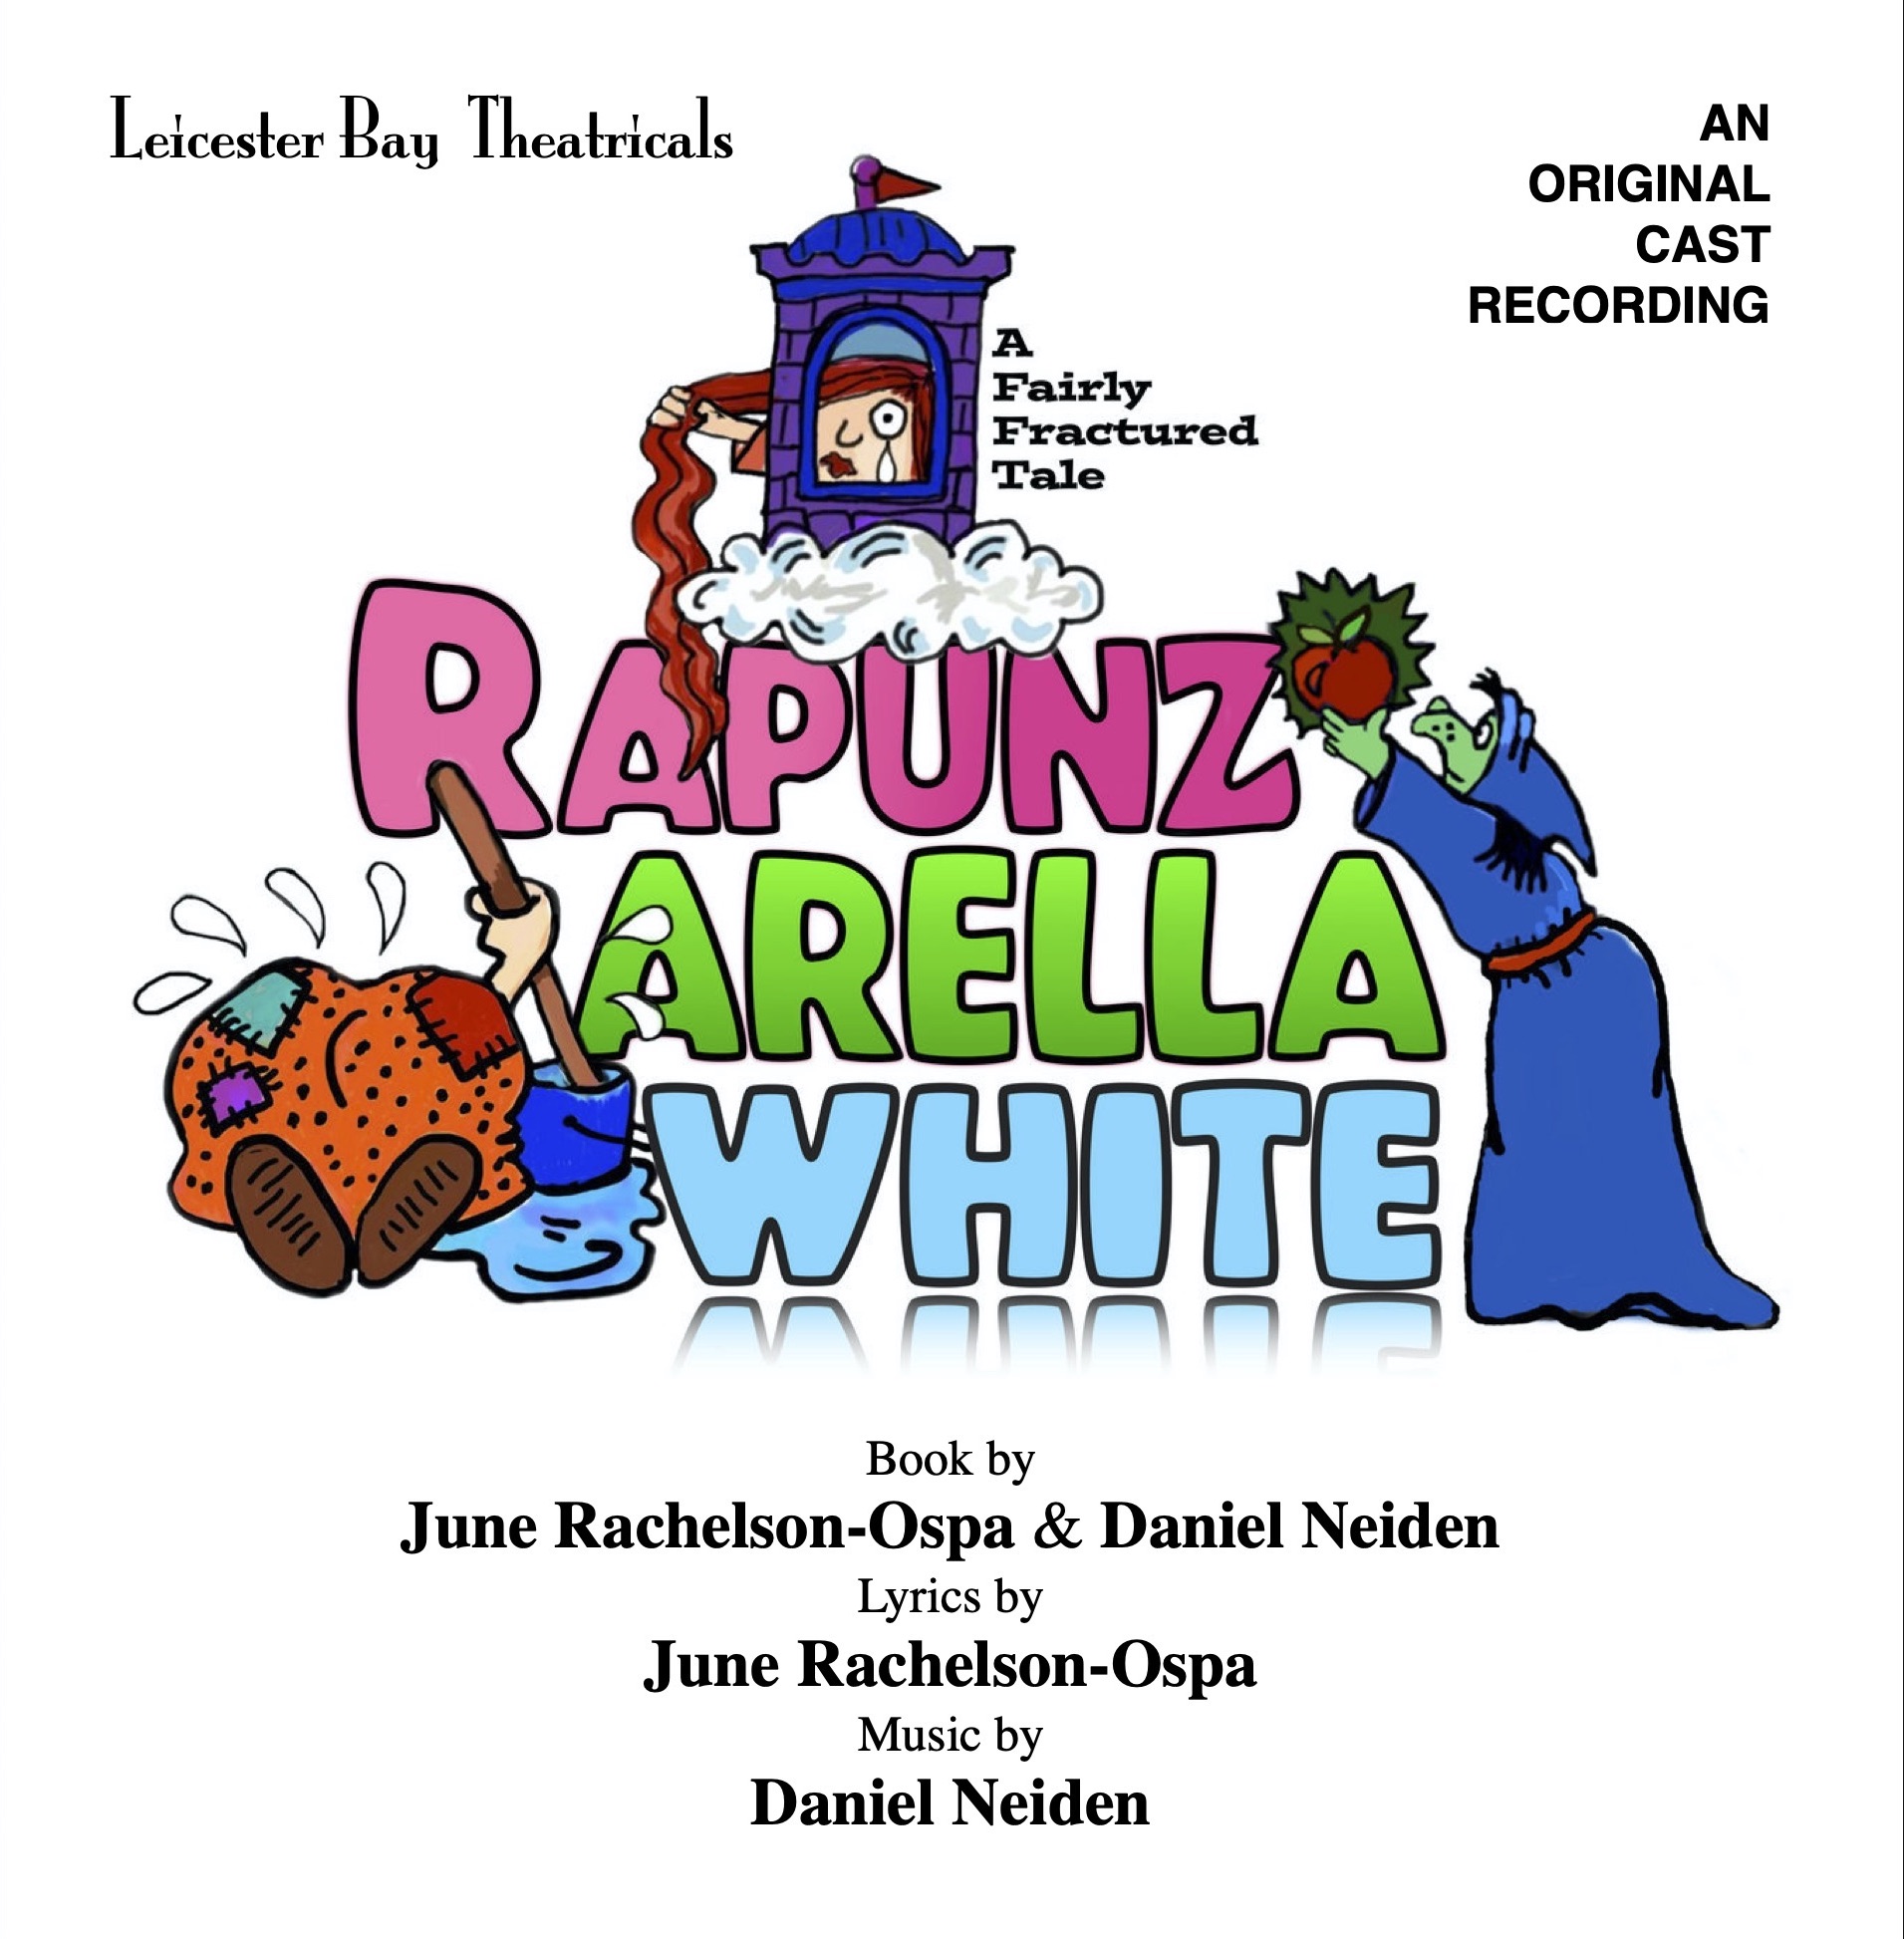 Rapunzarella White • Original Cast Album CD